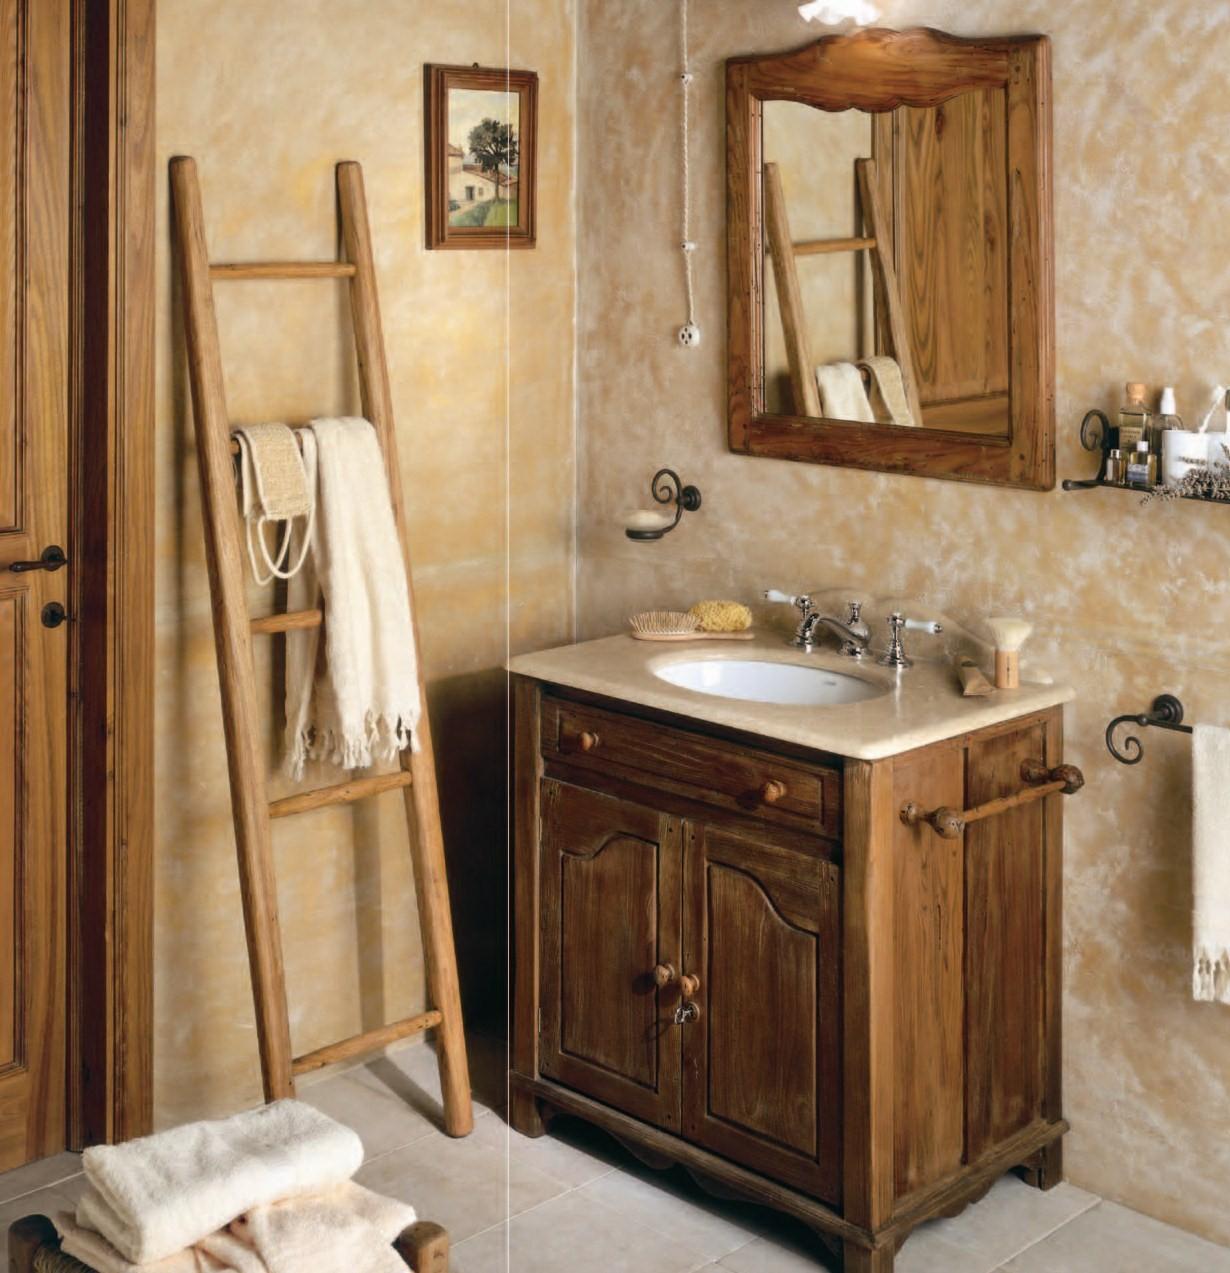 Мебель для ванны дуб. Деревянная мебель для ванной комнаты. Мебель для ванной комнаты дерево. Деревянный шкаф в ванную комнату. Ванная с деревянной мебелью.